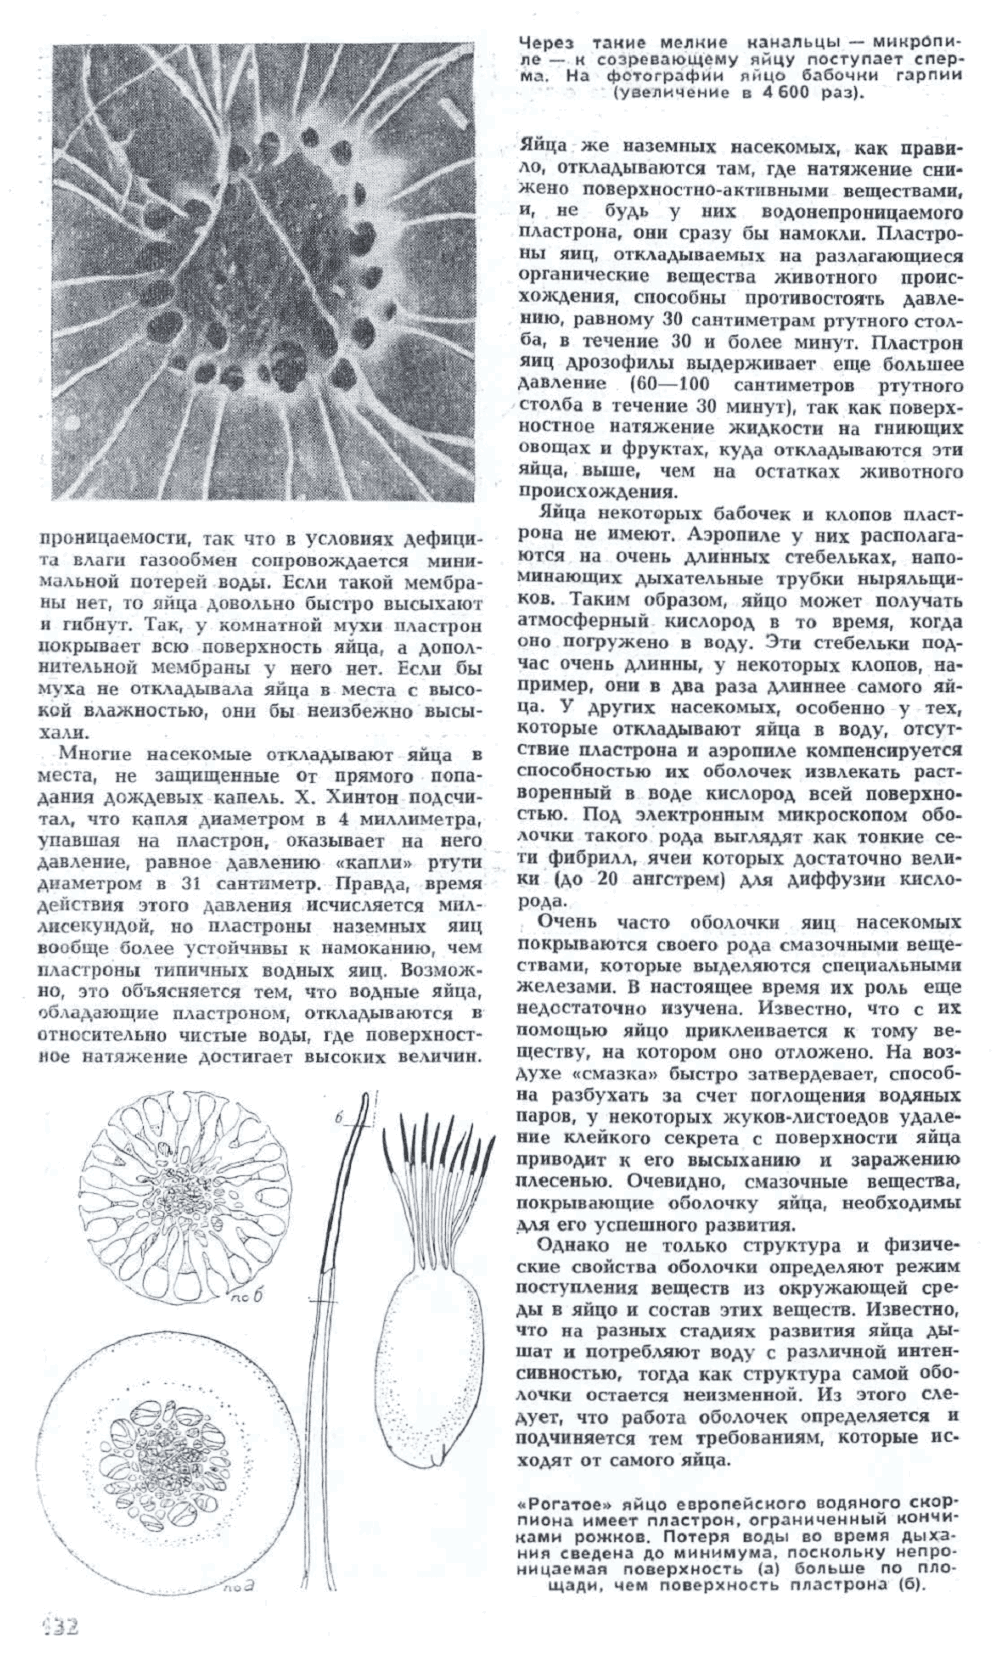 Маленькие секреты насекомых. Ю. Захваткин. Наука и жизнь, 1972, №5, с.130-133. Фотокопия №3